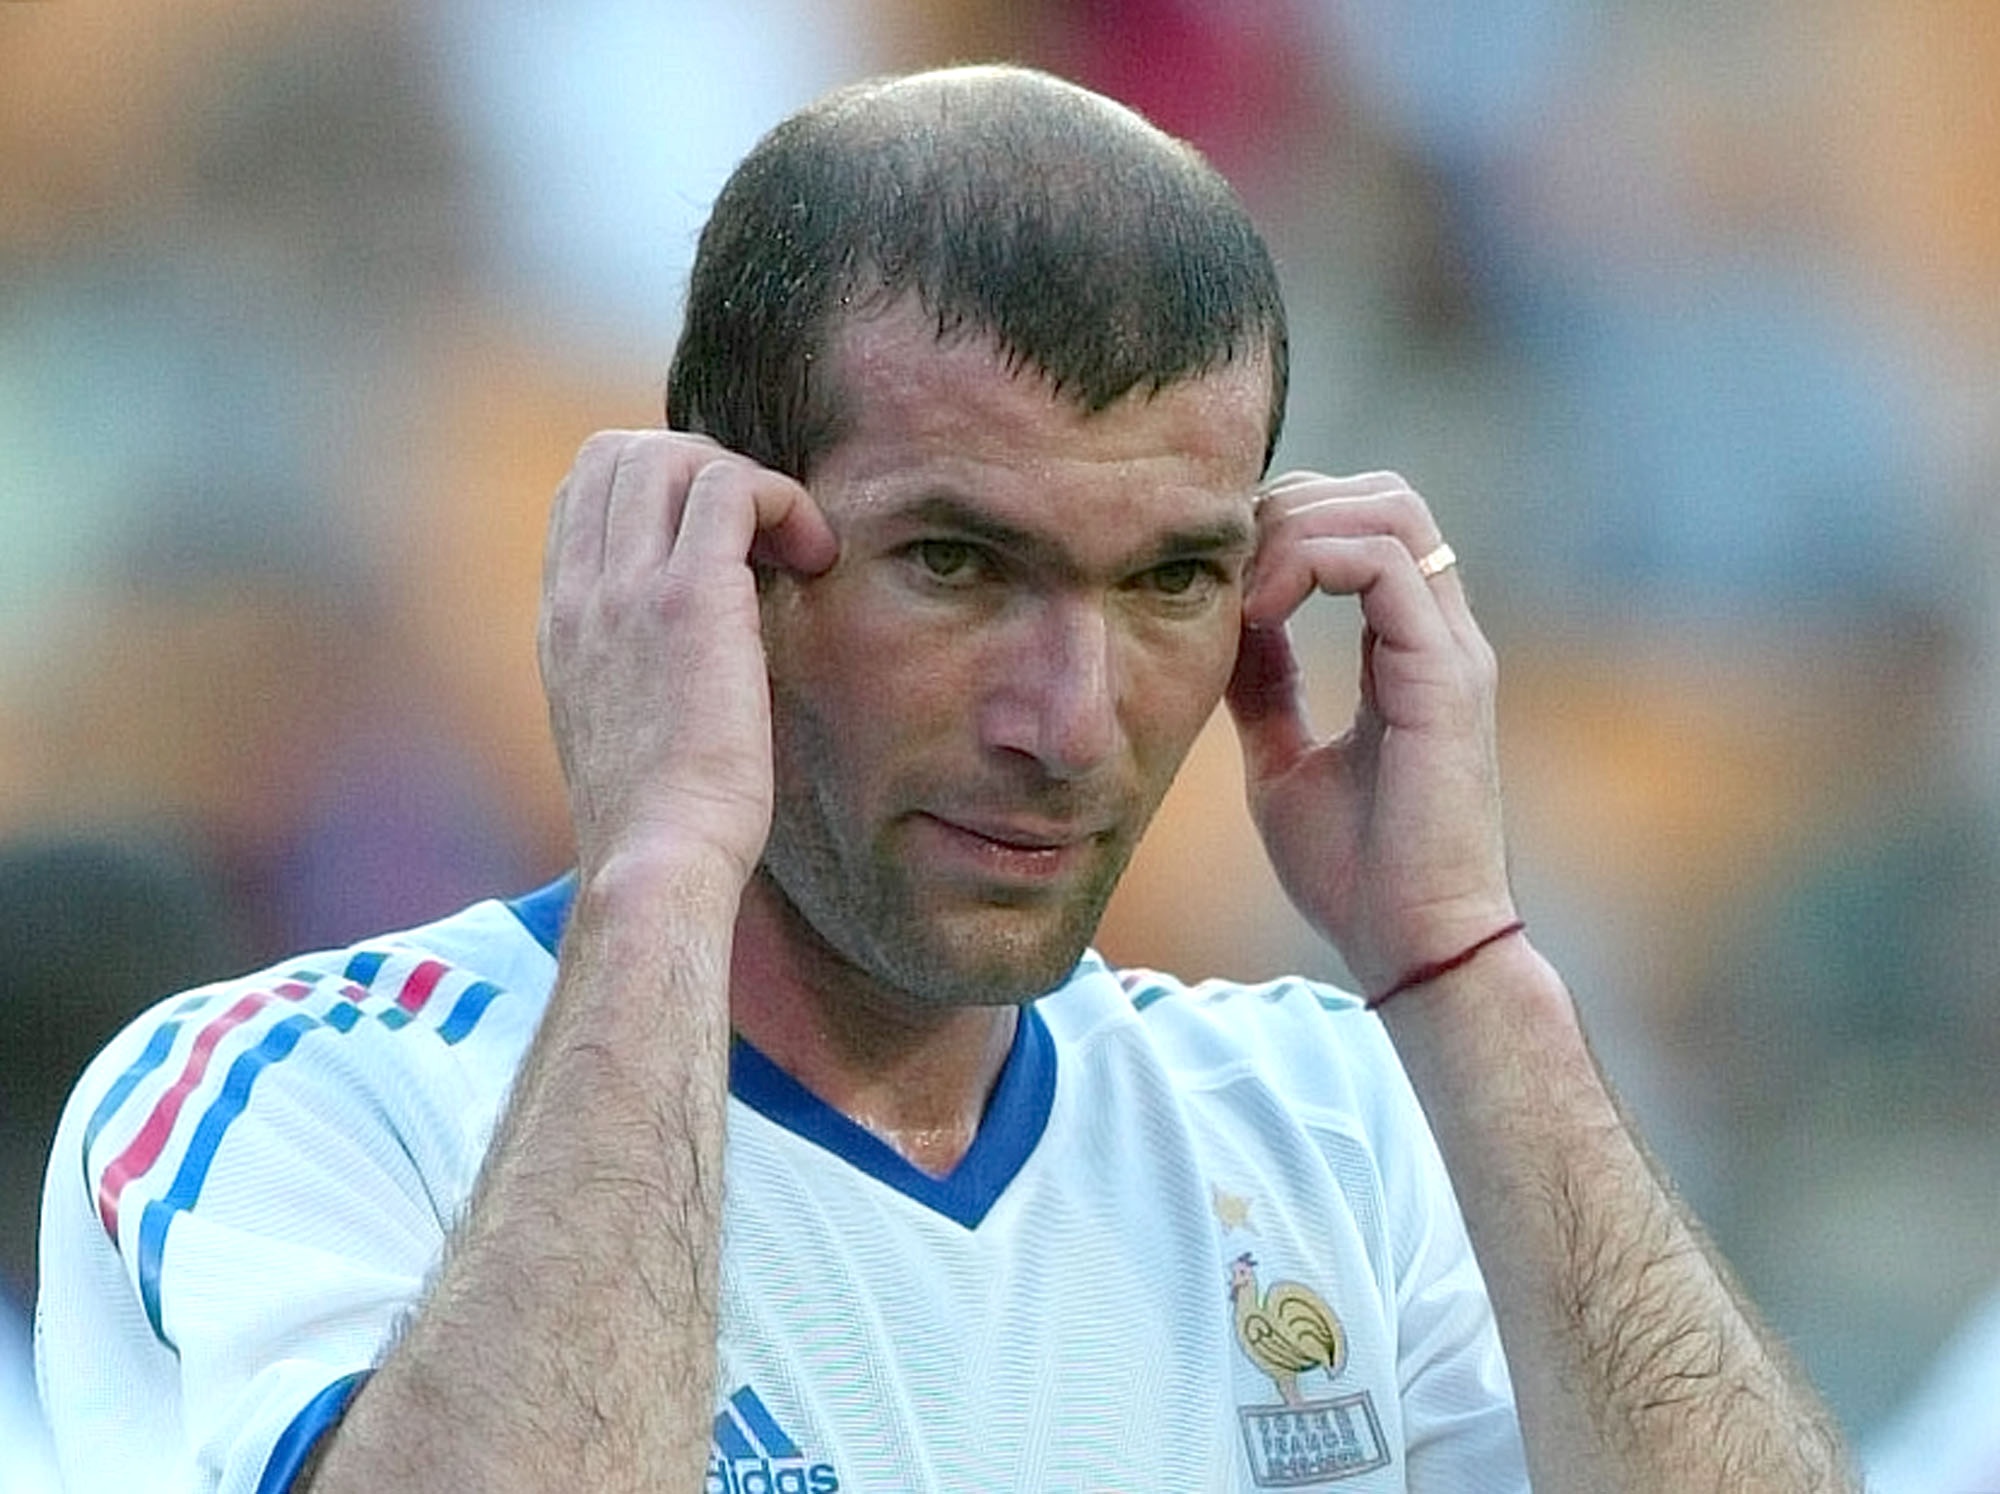 Innermittfältare: Zinedine Zidane, Frankrike. Var aktiv mellan 1988 och 2006. De stora matchernas man. Zizou vann allt på den högsta nivån och blev utsedd till världens bäste fotbollsspelare tre gånger. 